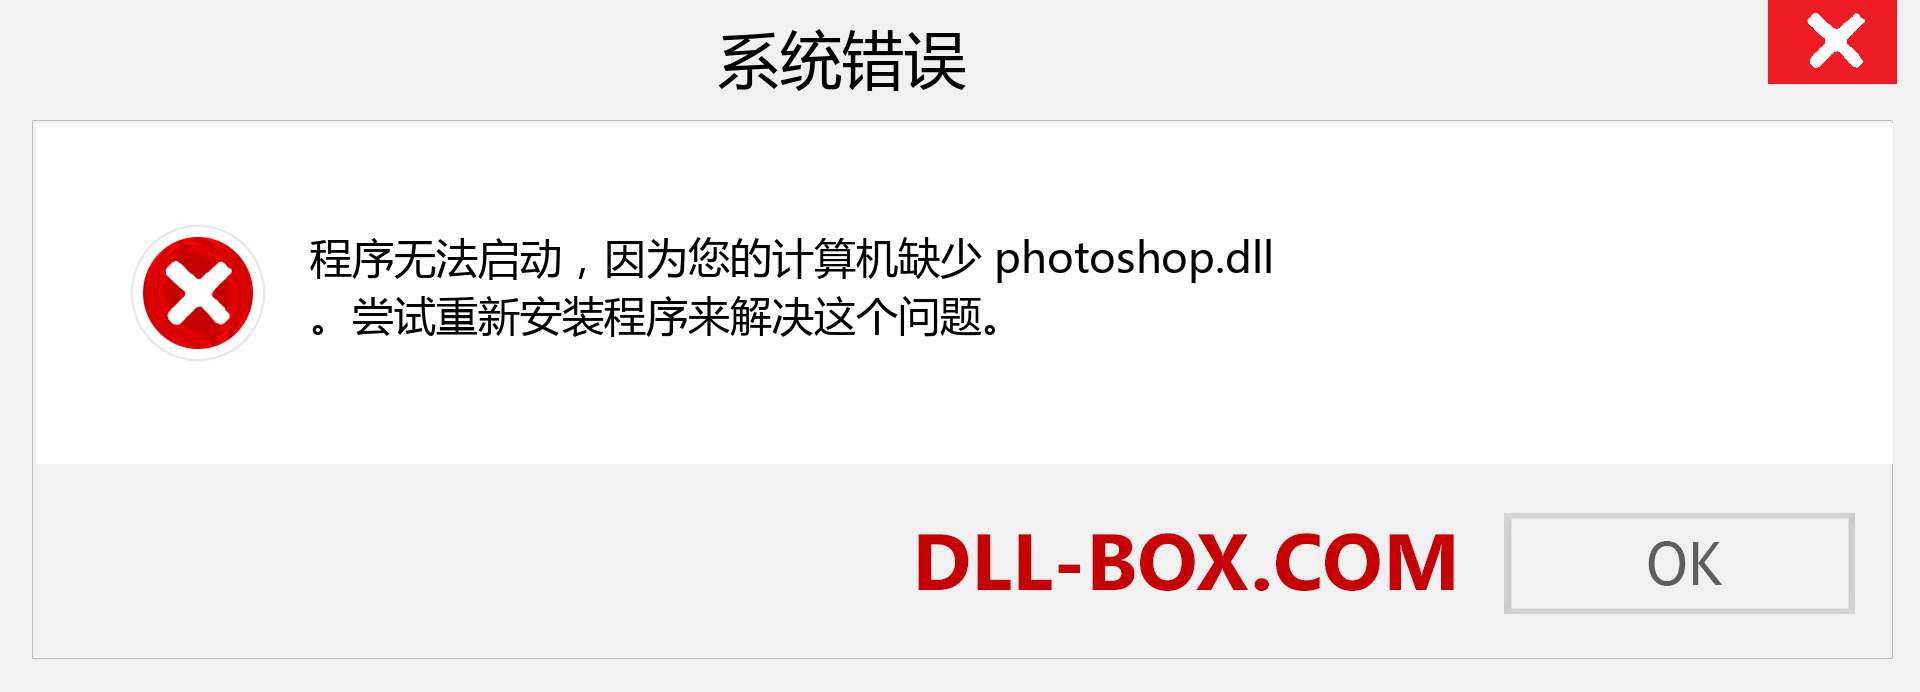 photoshop.dll 文件丢失？。 适用于 Windows 7、8、10 的下载 - 修复 Windows、照片、图像上的 photoshop dll 丢失错误